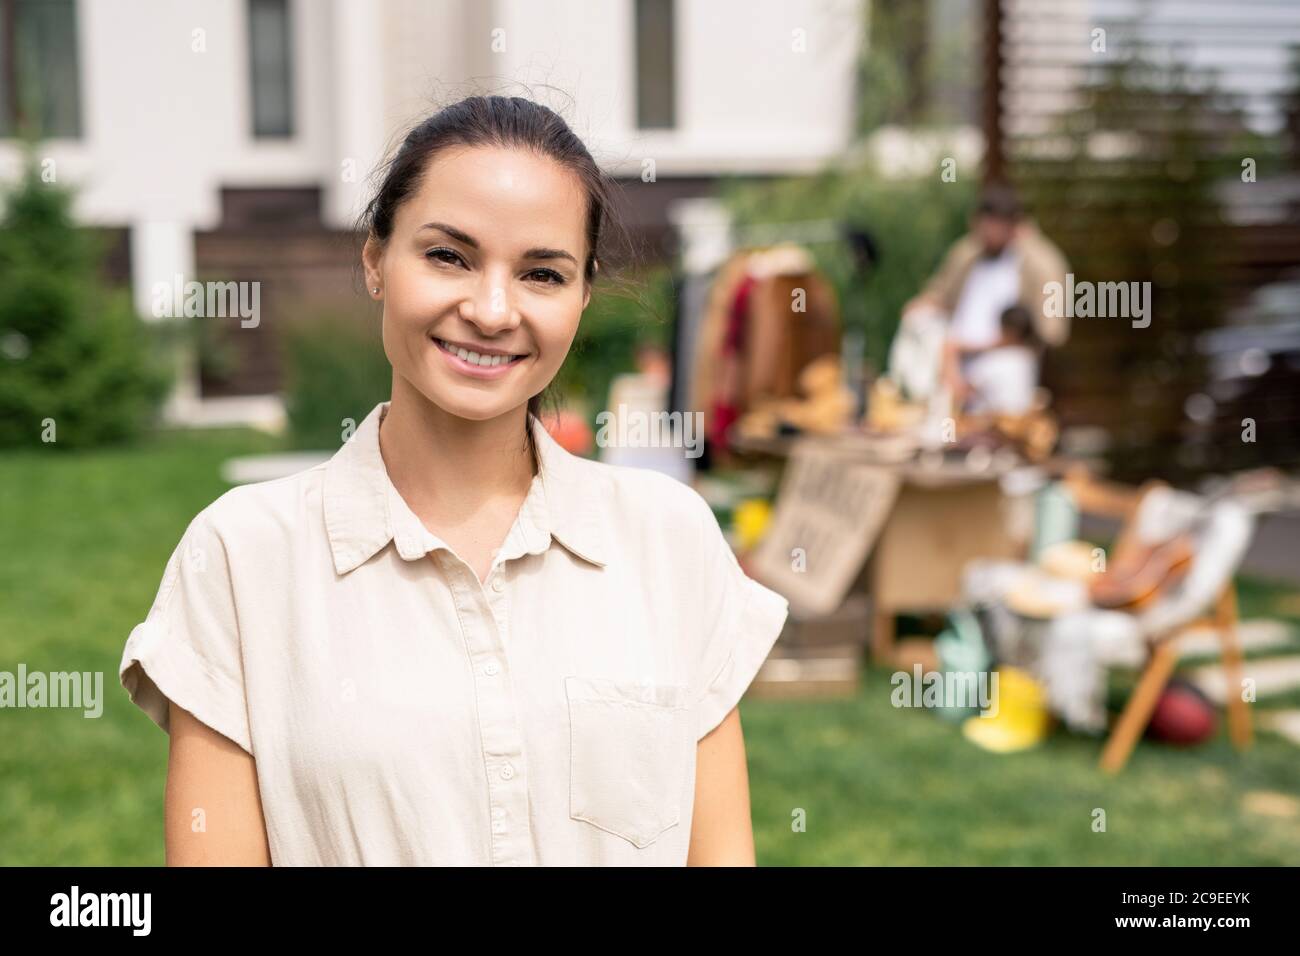 Portrait von lächelnd attraktive junge Frau in beige Bluse Besuch Garage Verkauf, um Waren für den Innenraum zu kaufen Stockfoto